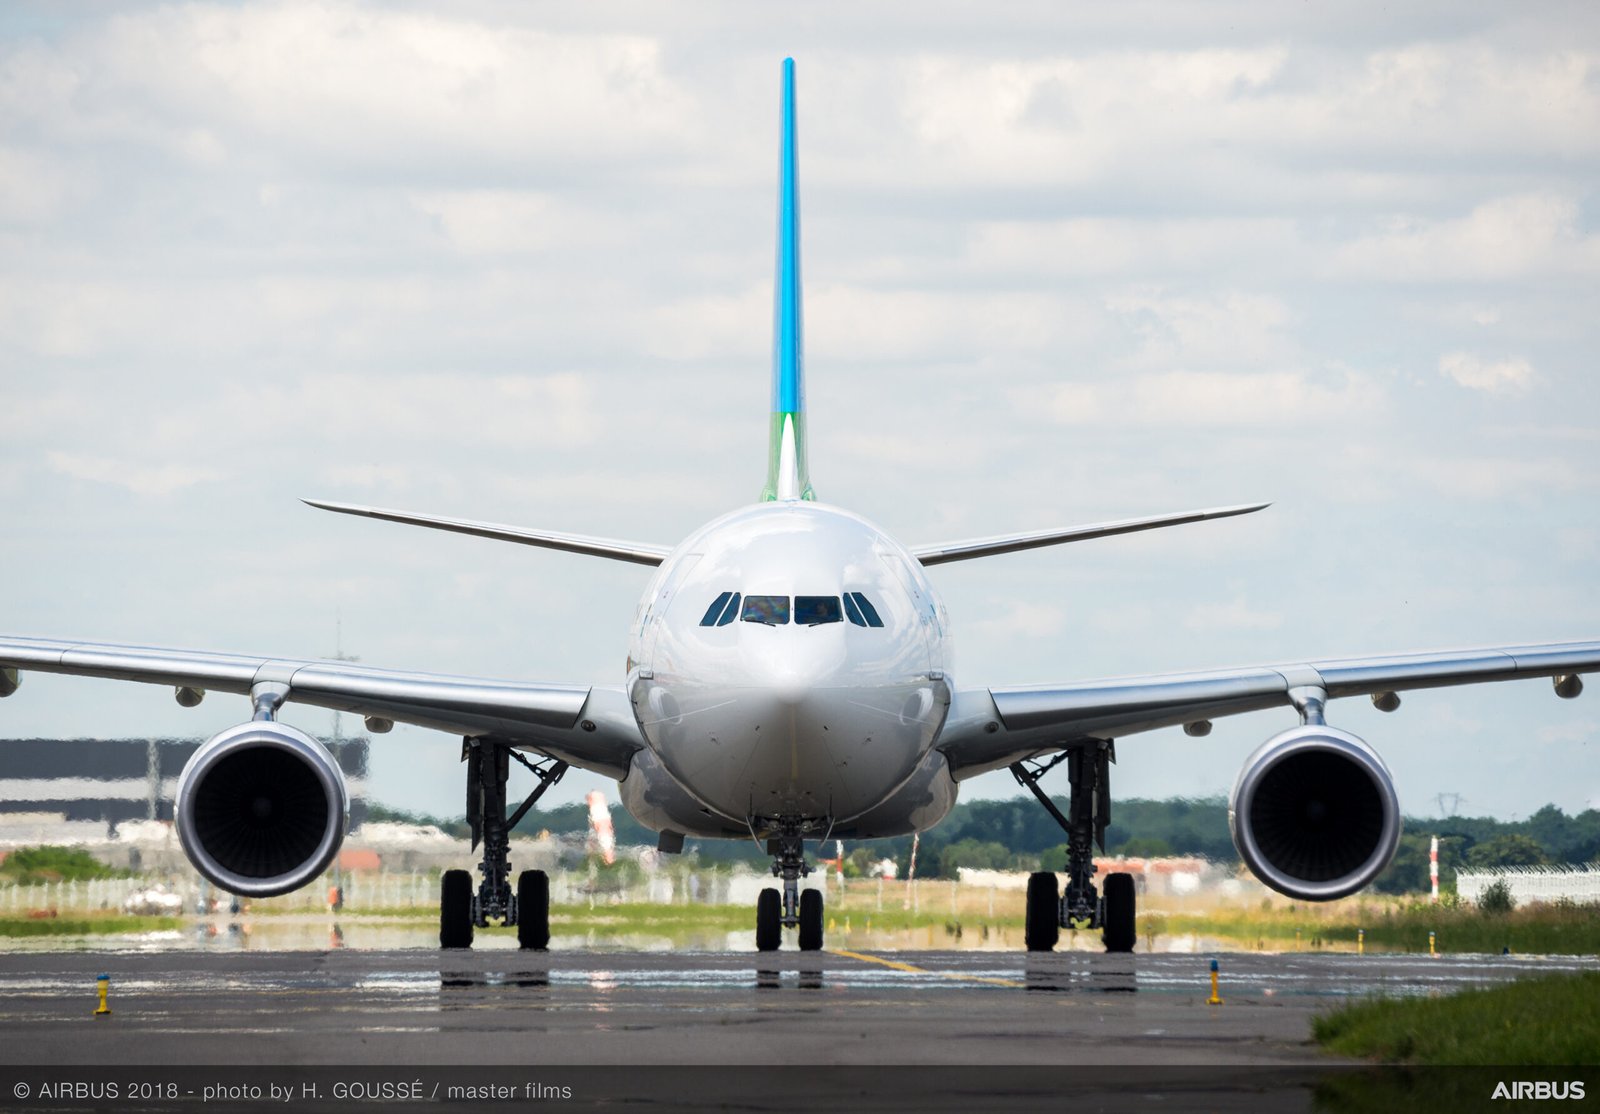 LEVEL opera una flota exclusivamente compuesta por el A330-200. Foto: Airbus